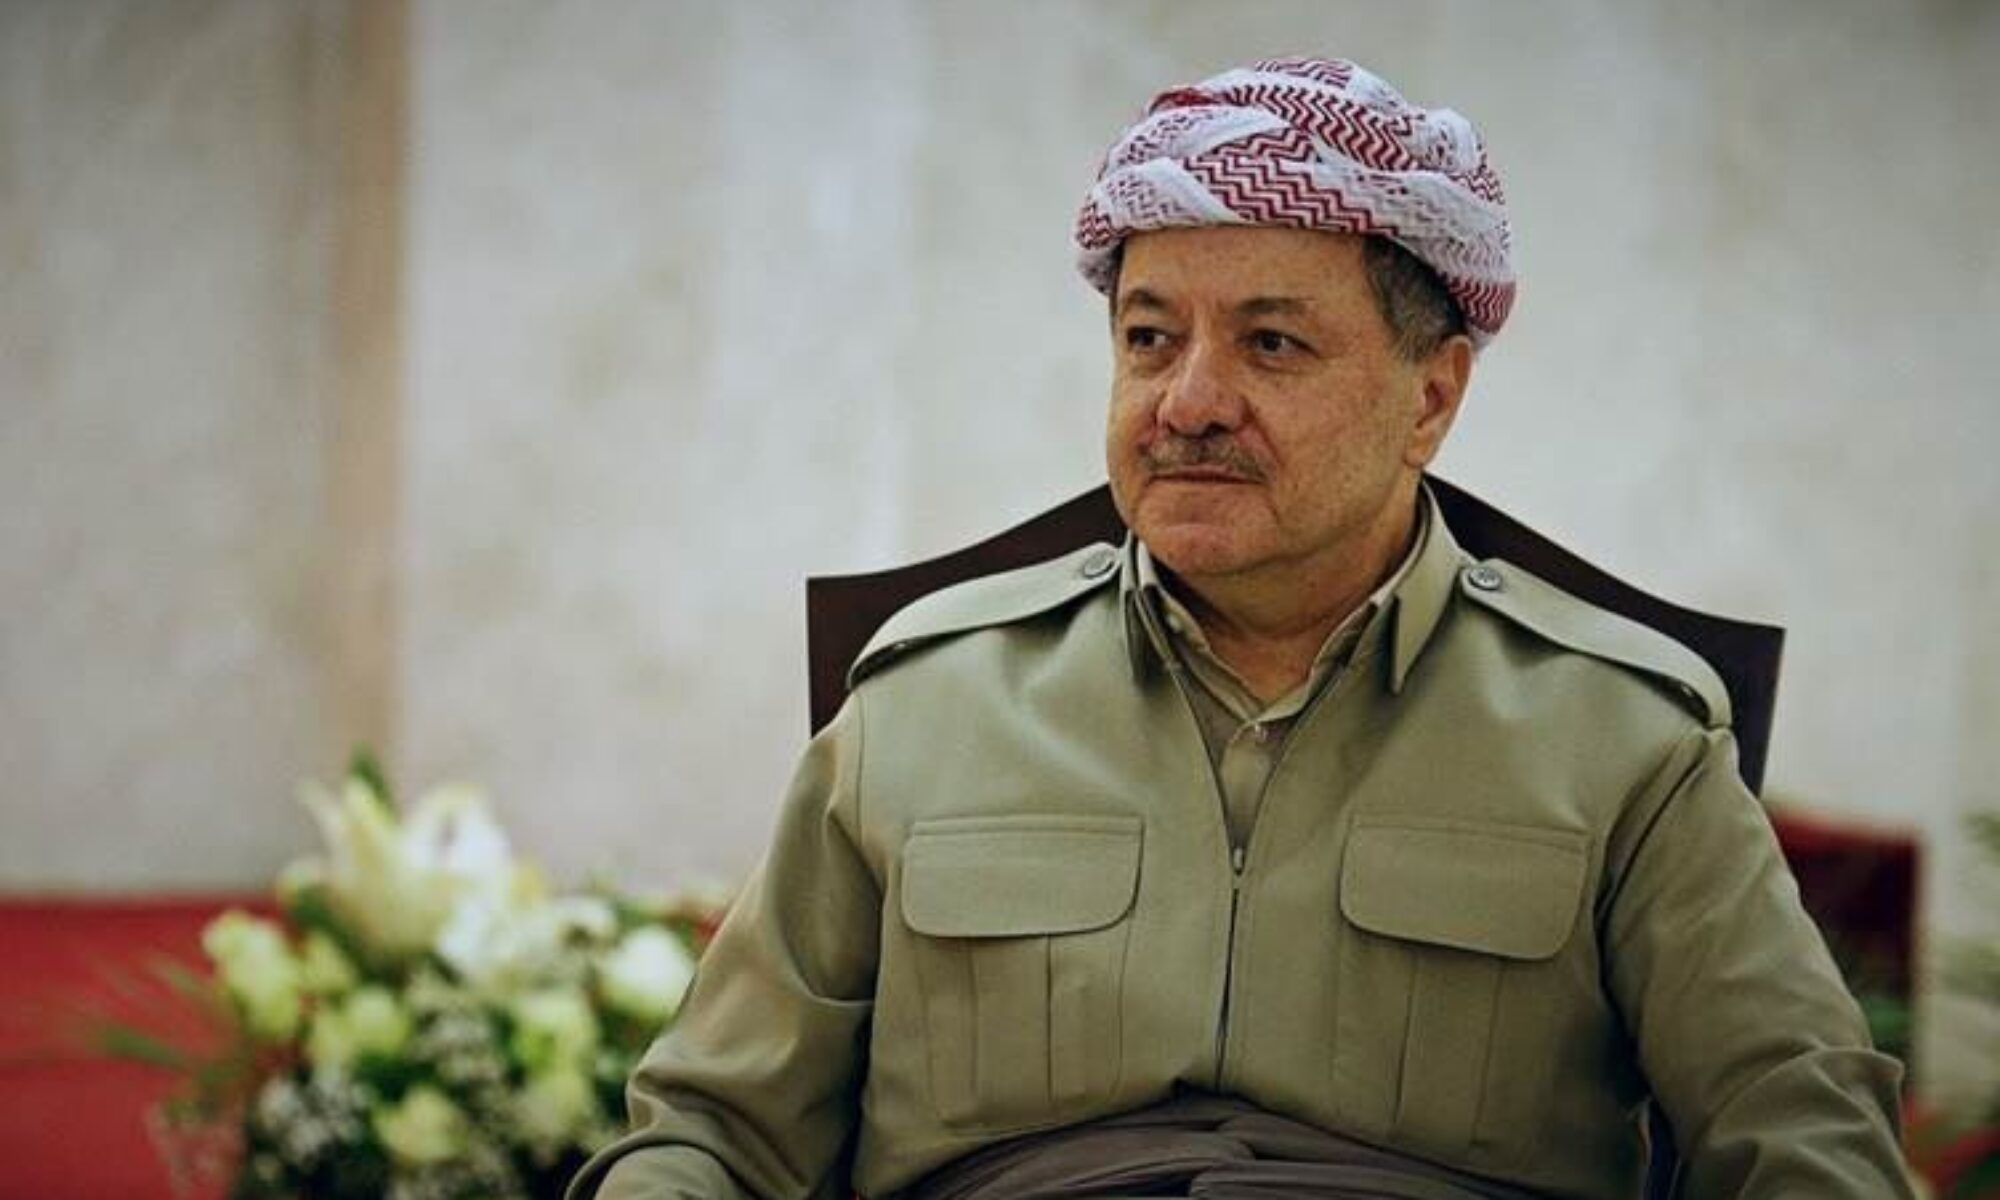 Mesud Barzani: “Bu bayramın, tüm insanlık için acı ve kederlerinin son bulması ve barışın gelmesine vesile olmasını temenni ediyorum